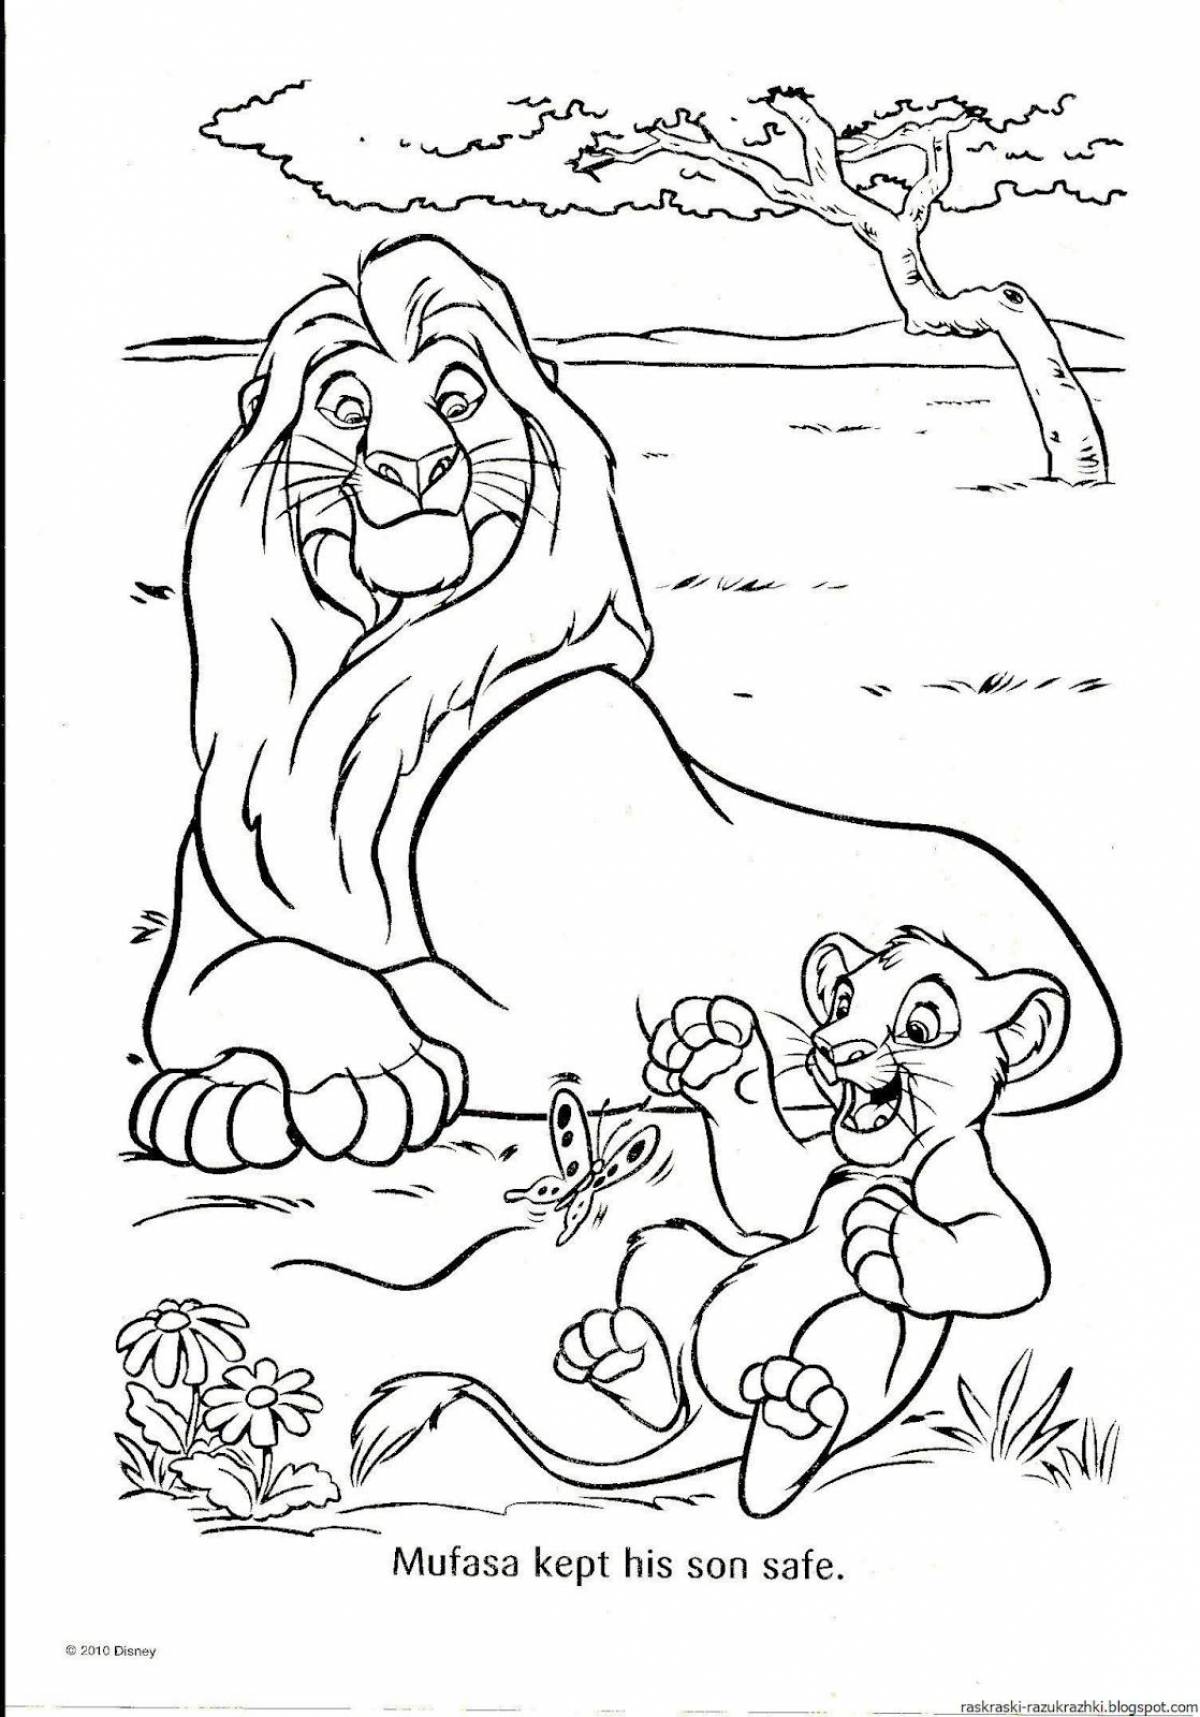 Rampant Lion King coloring book